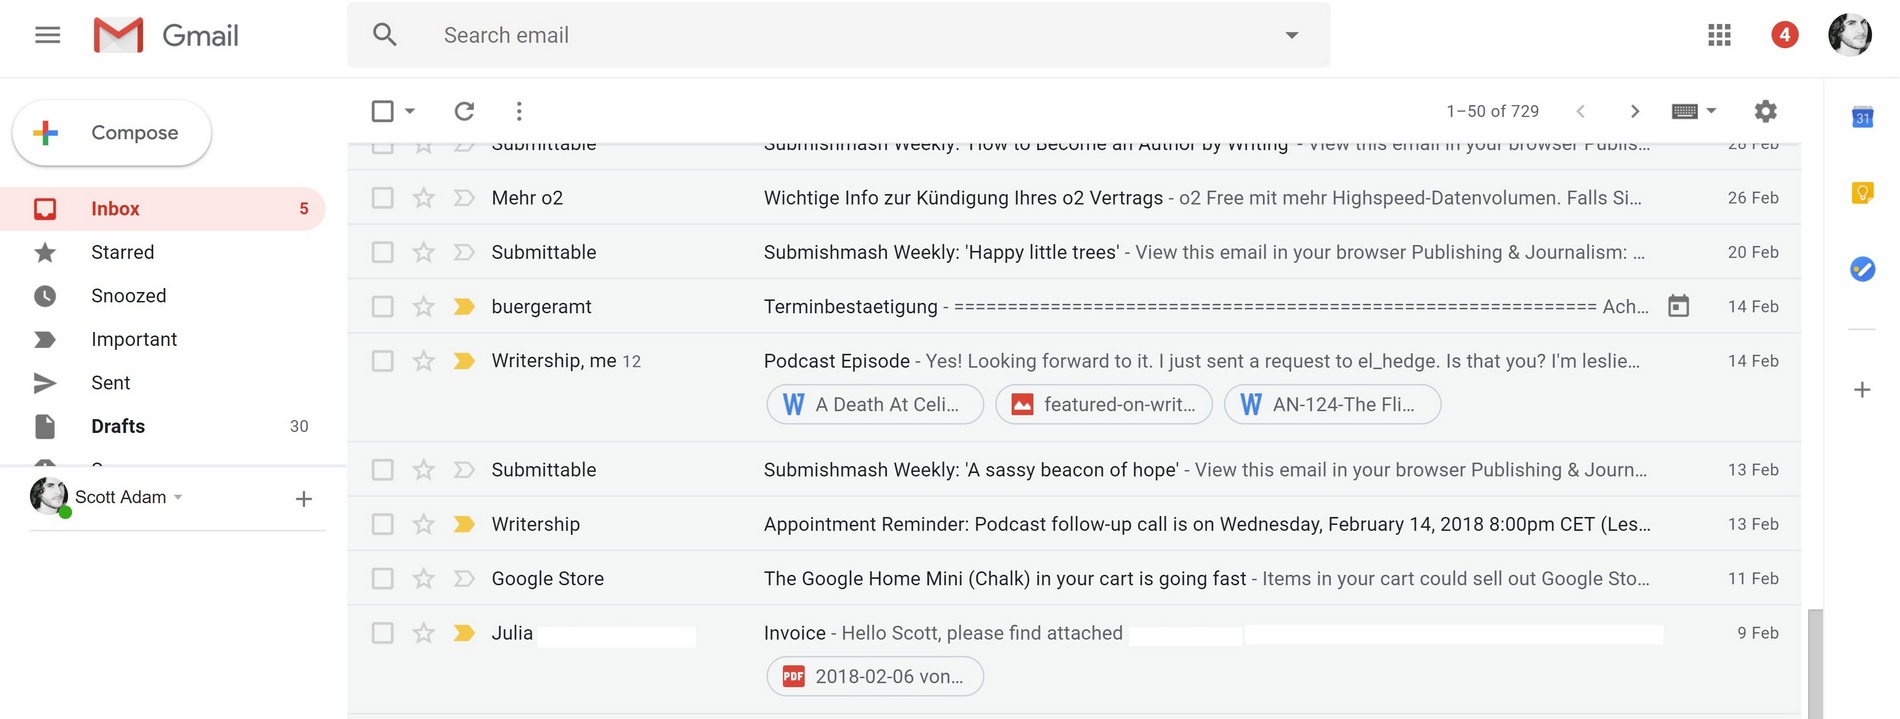 新的Gmail附件